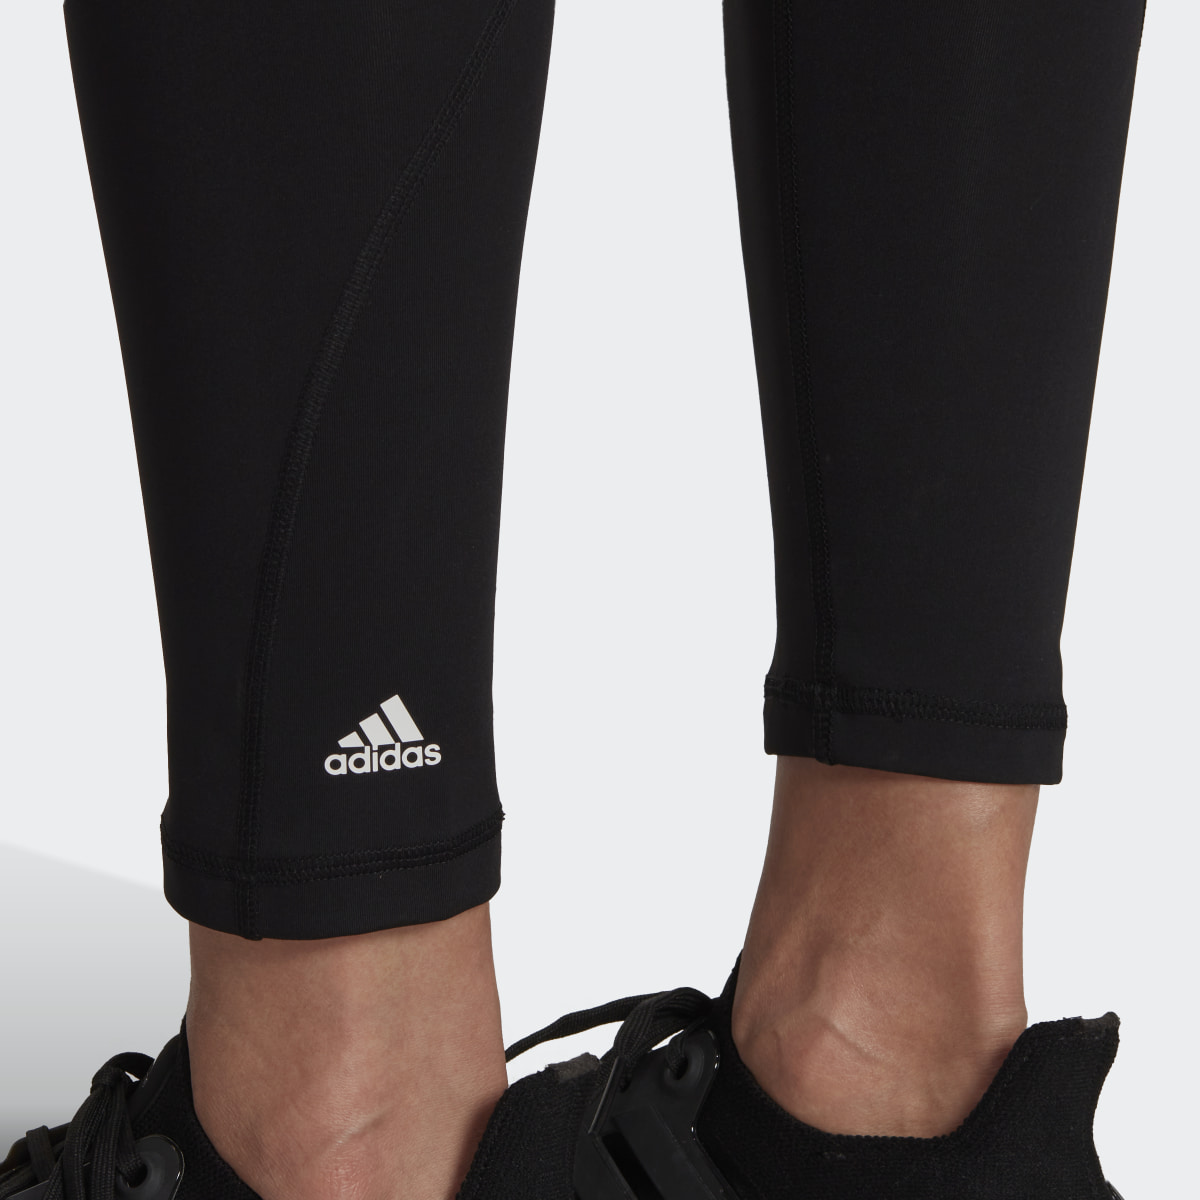 Adidas Optime Training Period-Proof 7/8-Leggings. 6